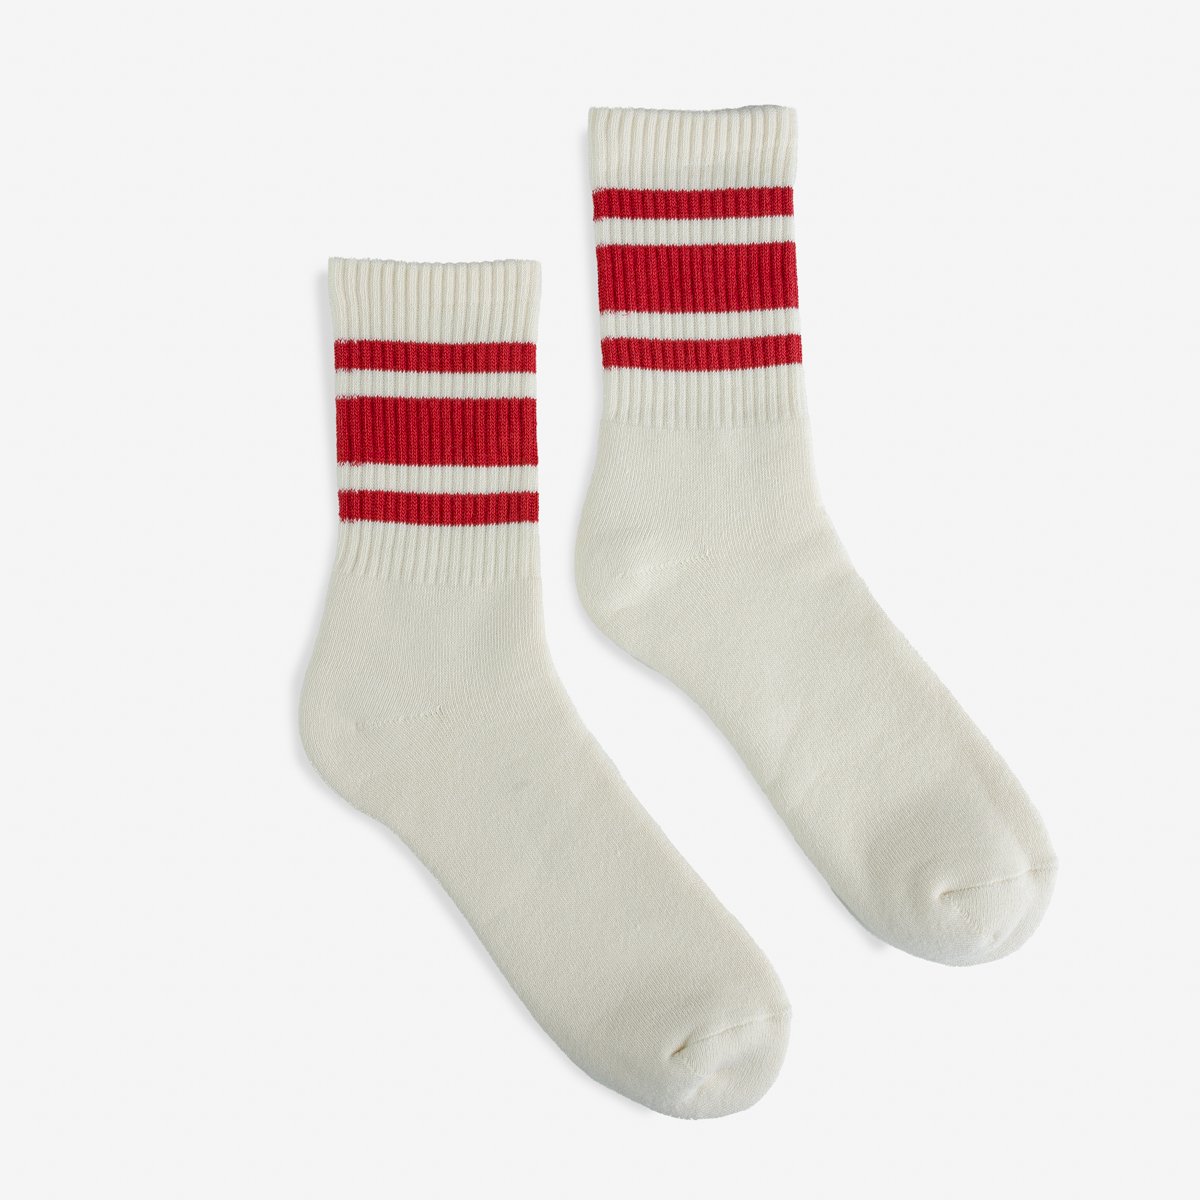 Decka 80s Skater Socks - Short Length - Red